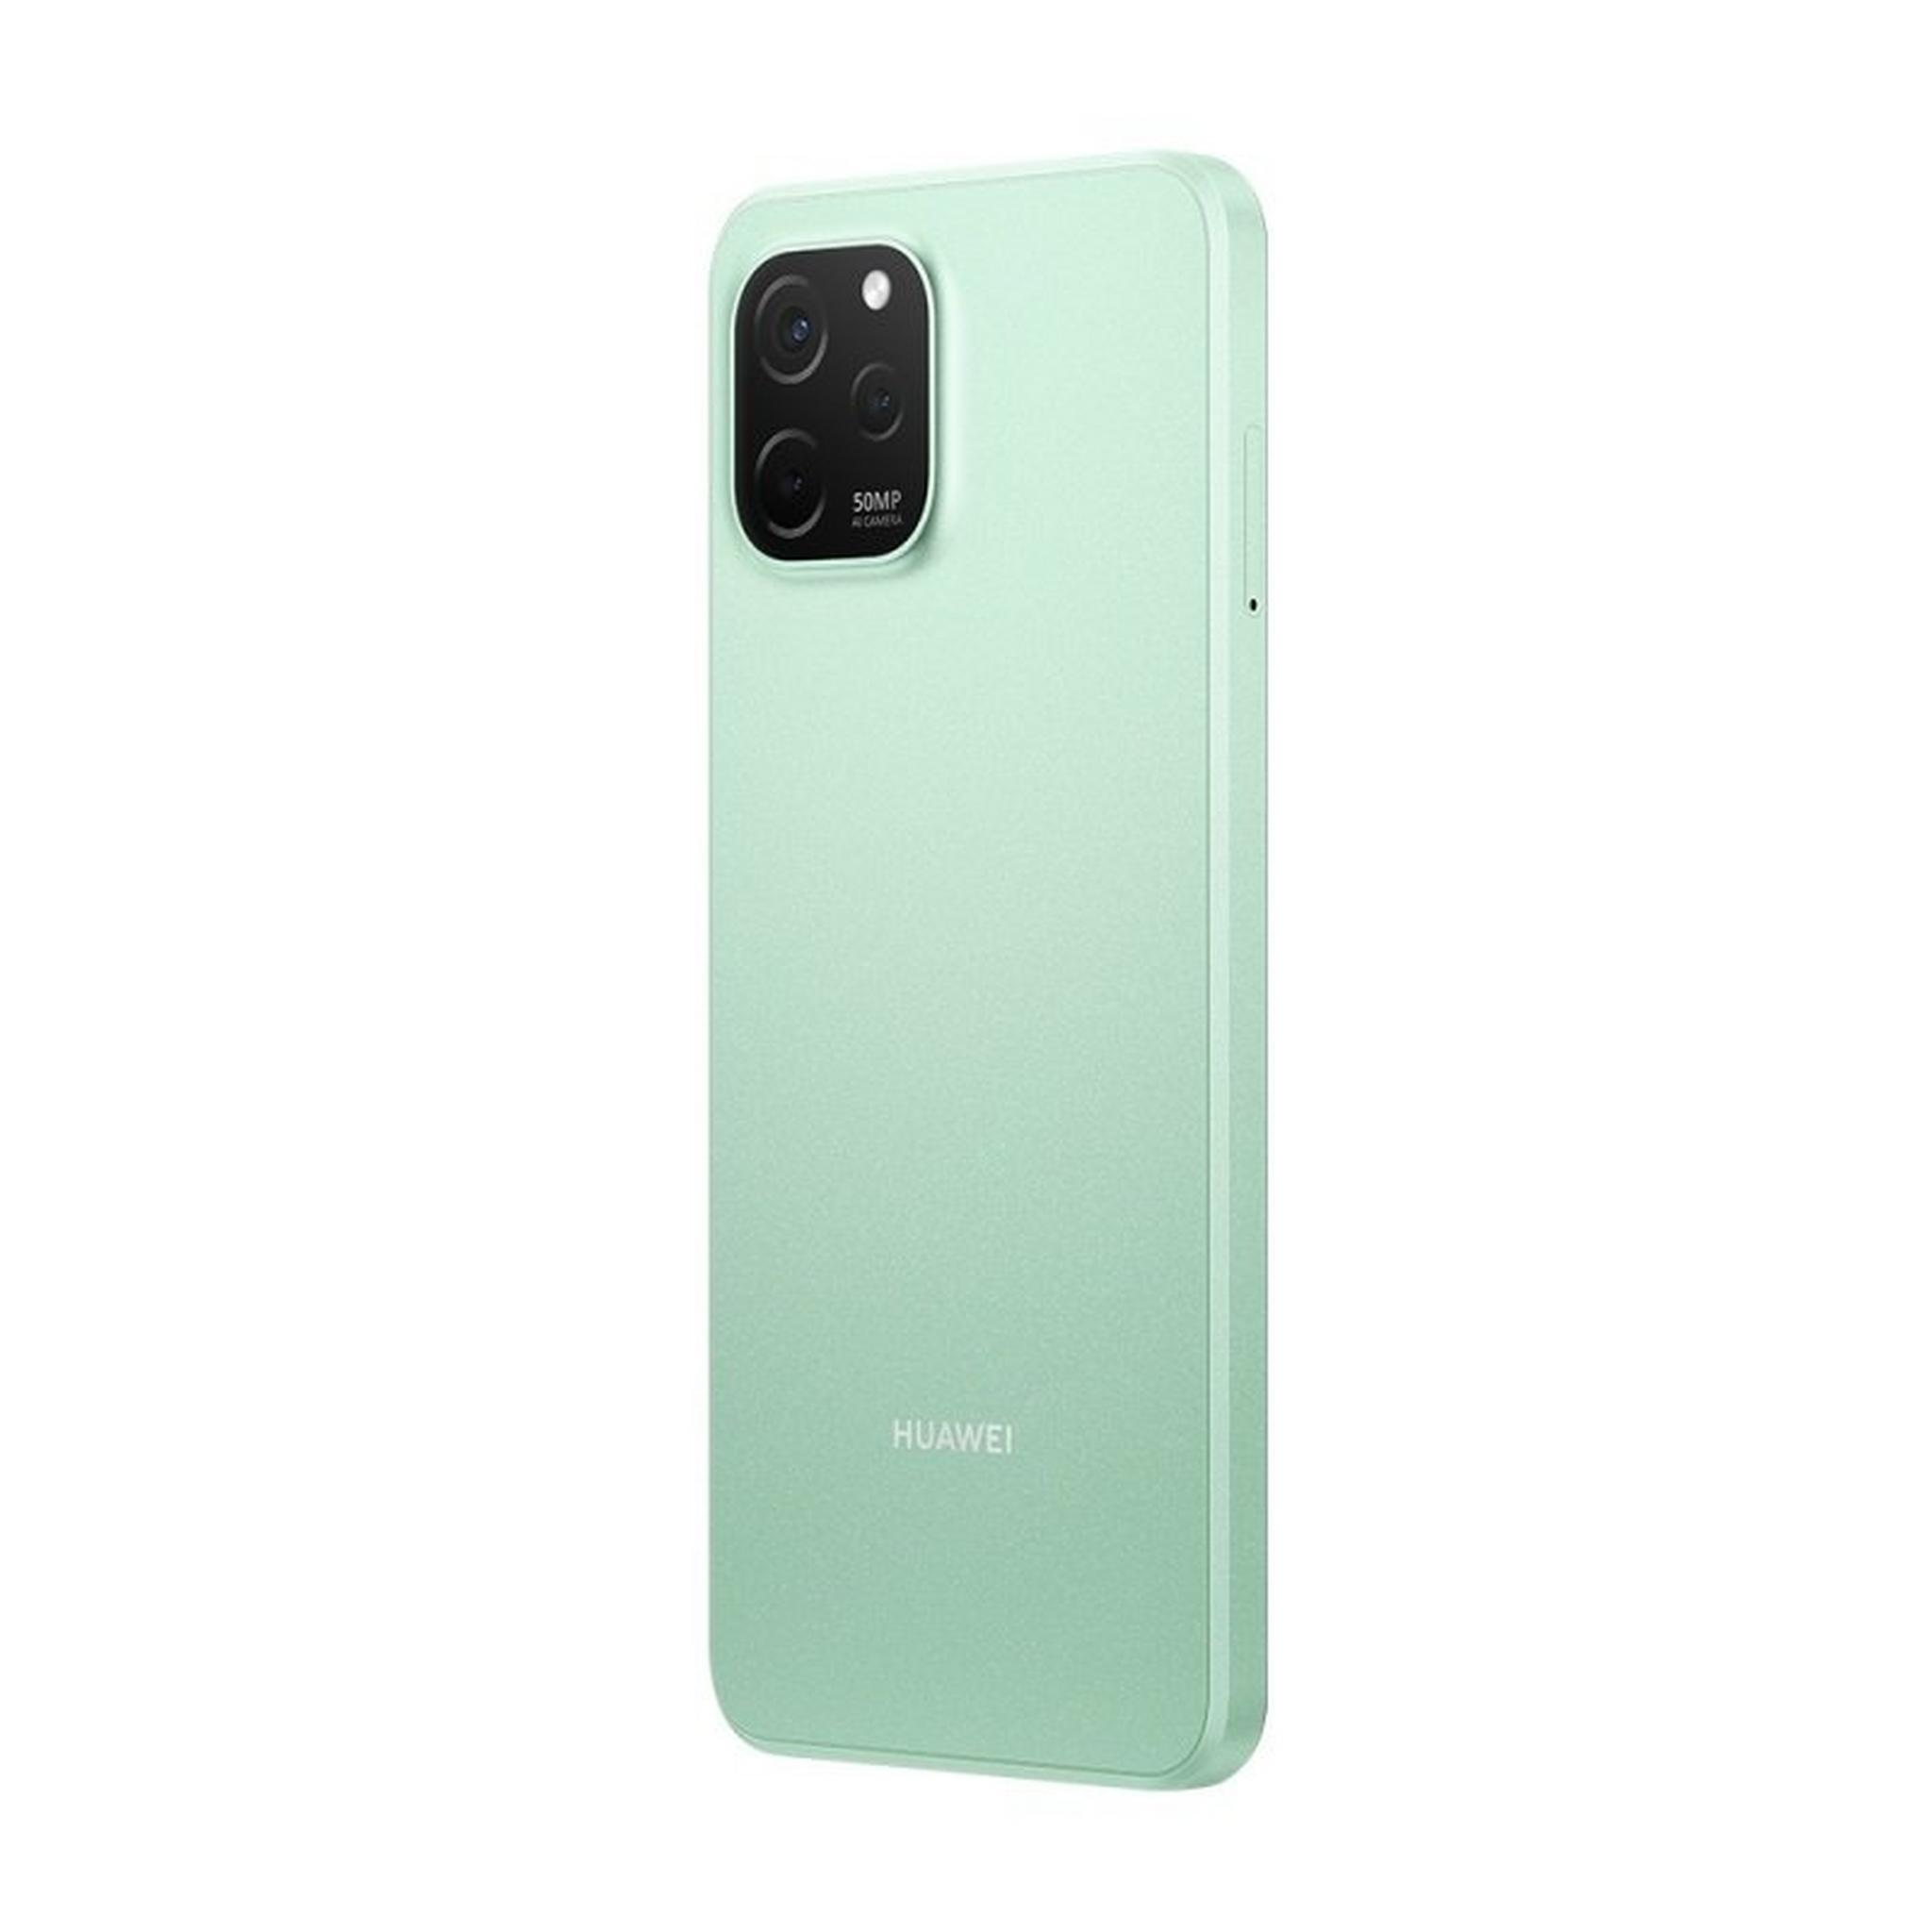 Huawei Nova Y61 64GB Phone - Mint Green